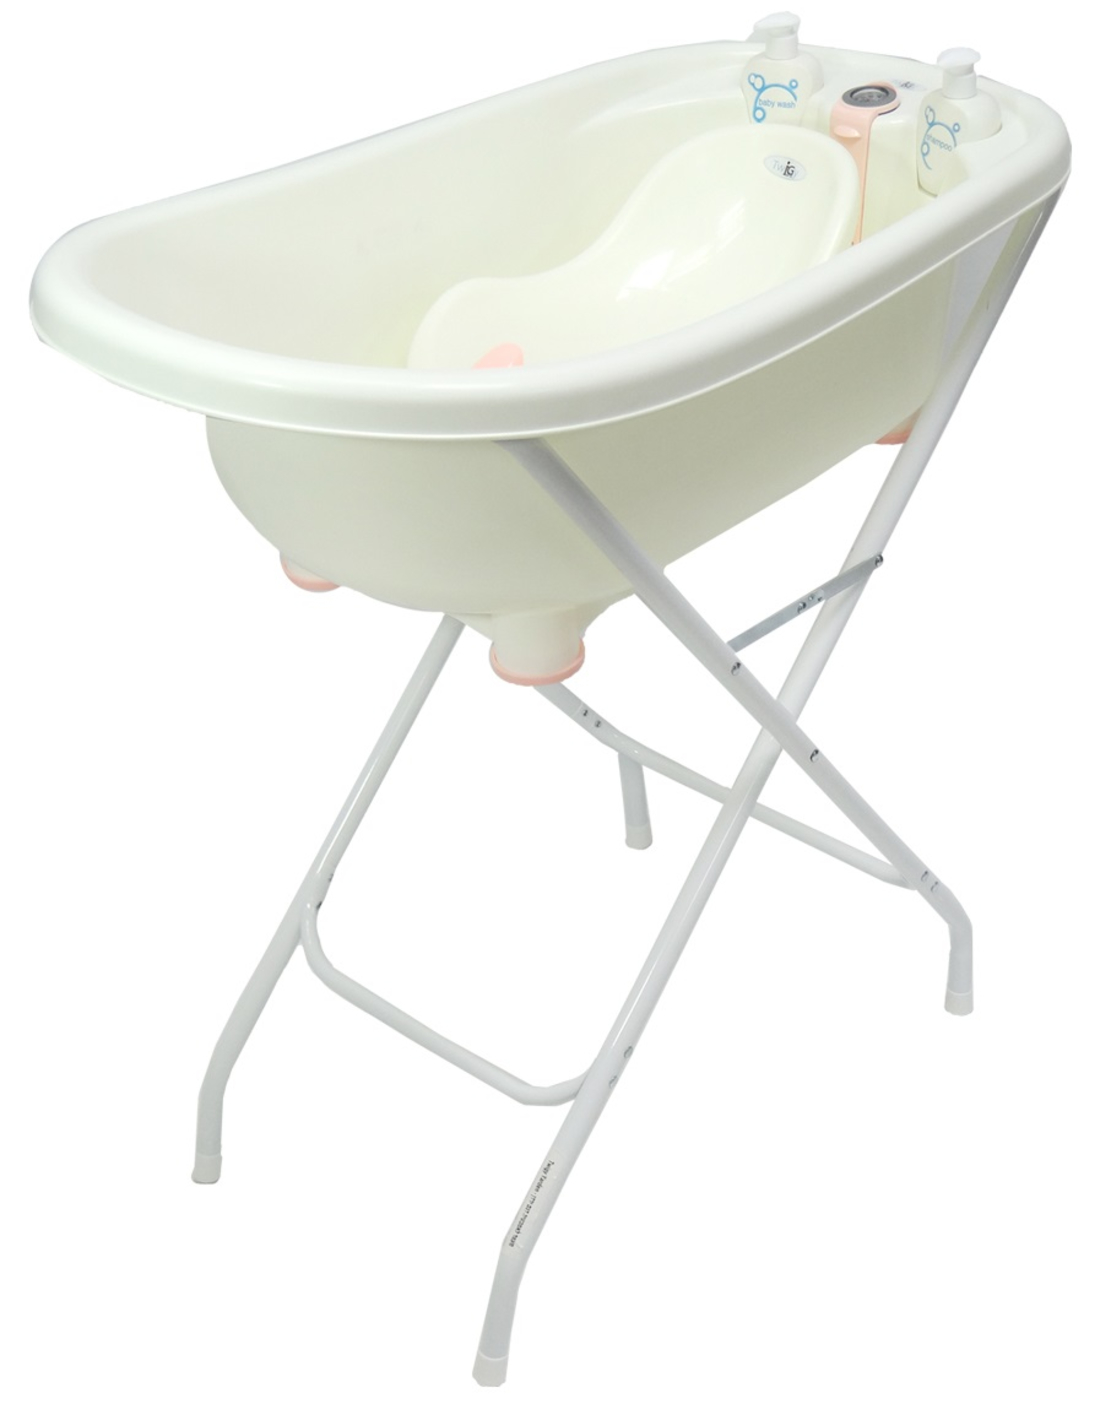 אמבטיה לתינוק עם מעמד דגם ספא - Baby Queenix